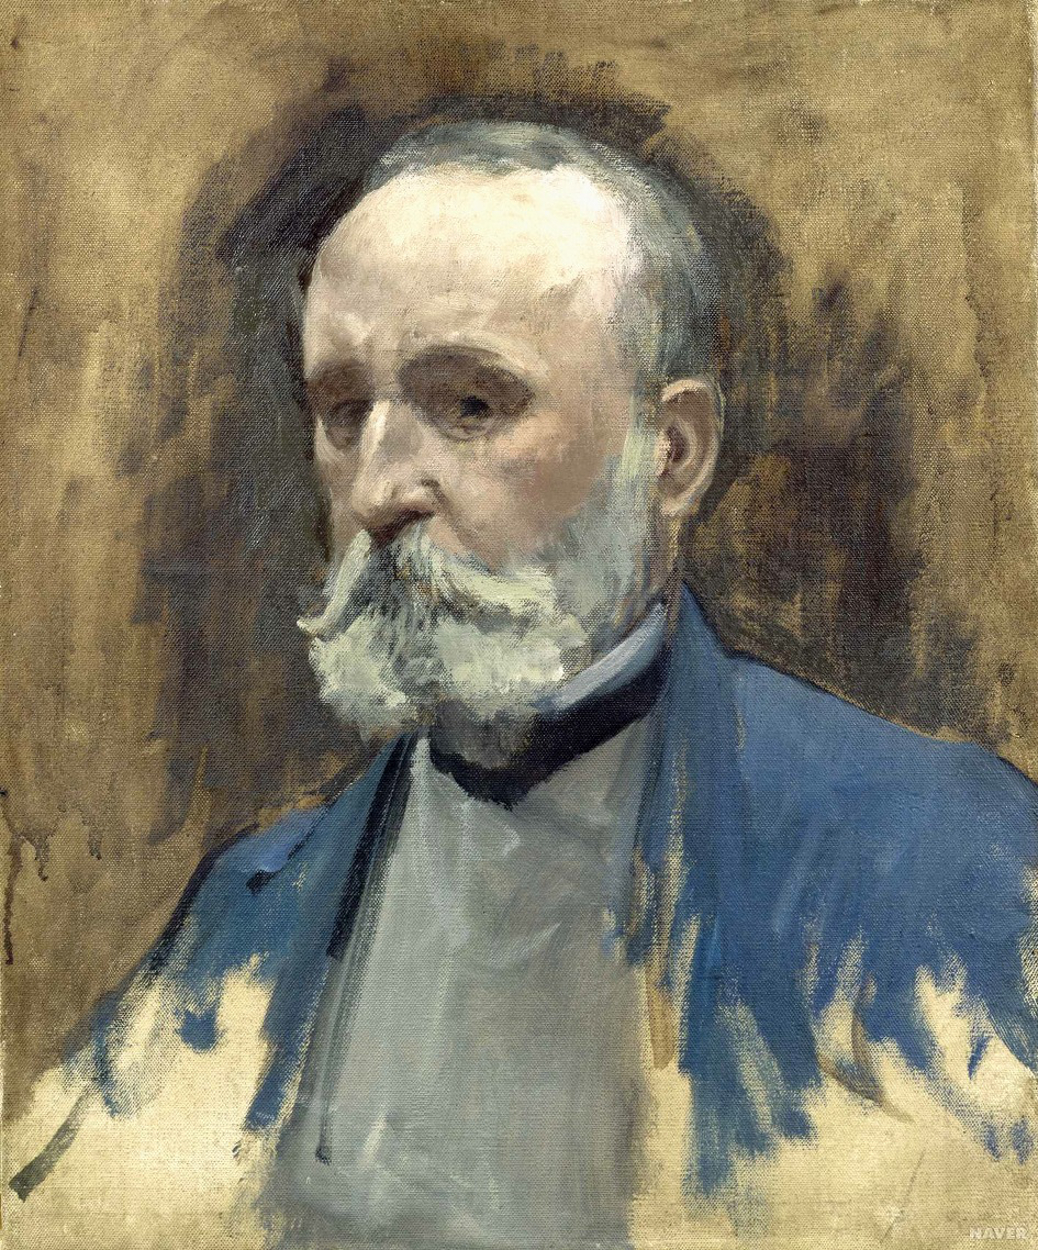 Pierre Puvis de Chavannes - December 14, 1824 - October 24, 1898